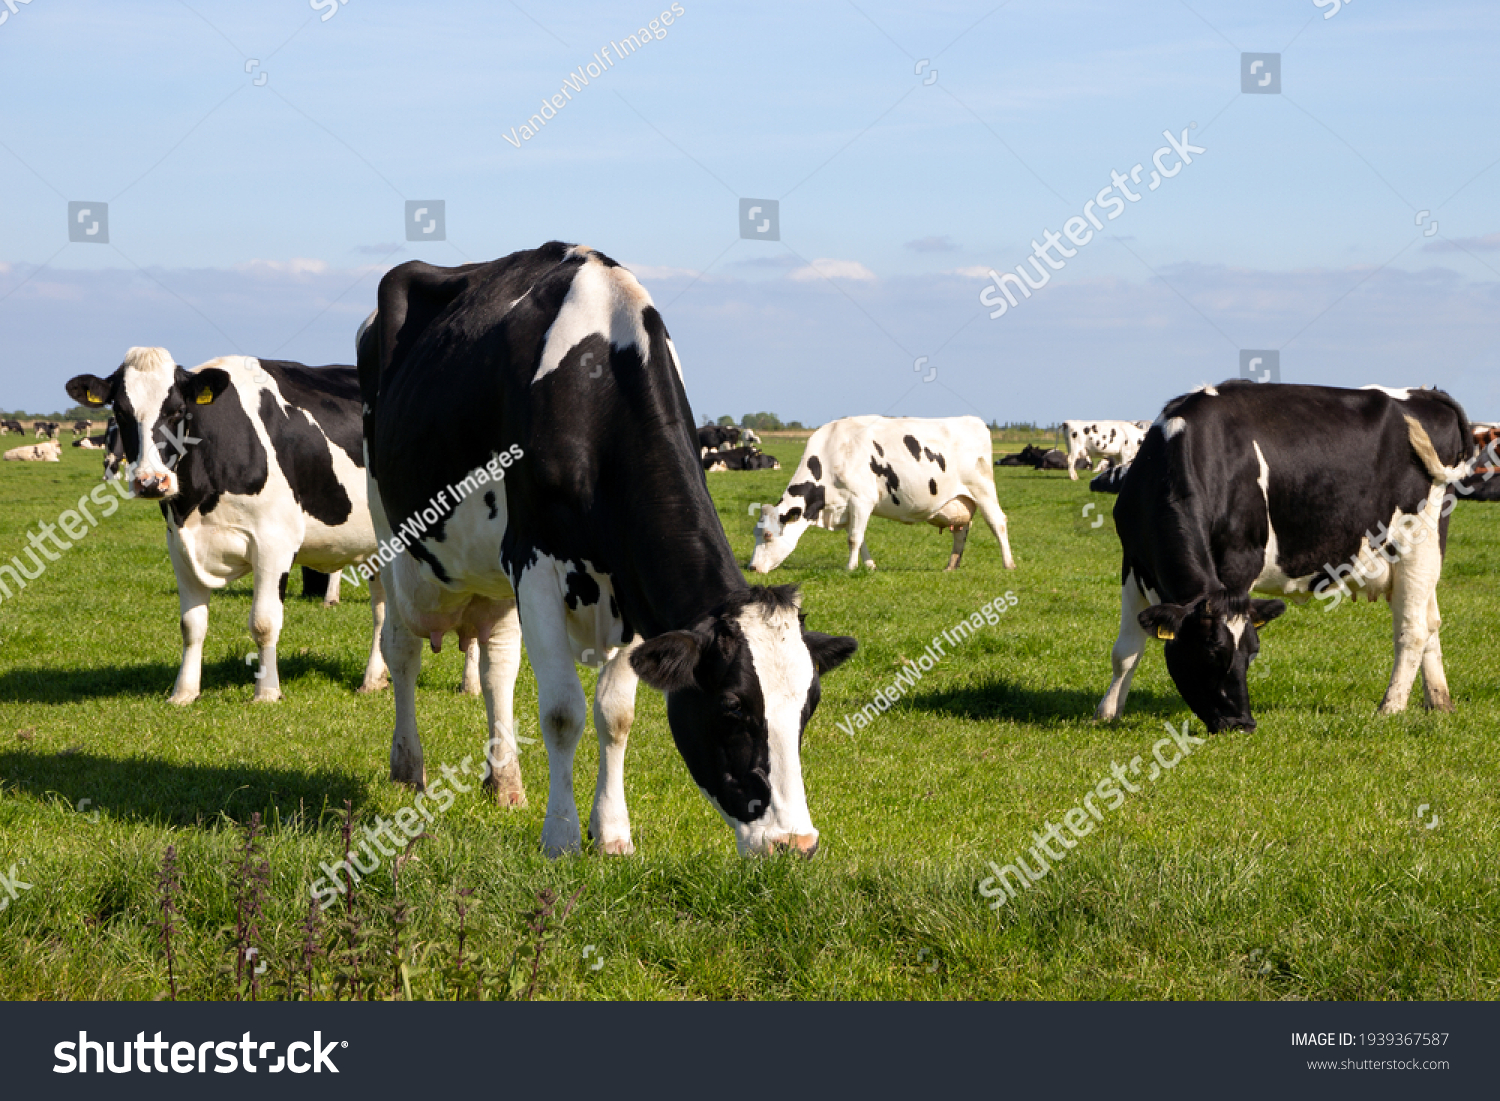 Cow Graze Images Stock Photos Vectors Shutterstock